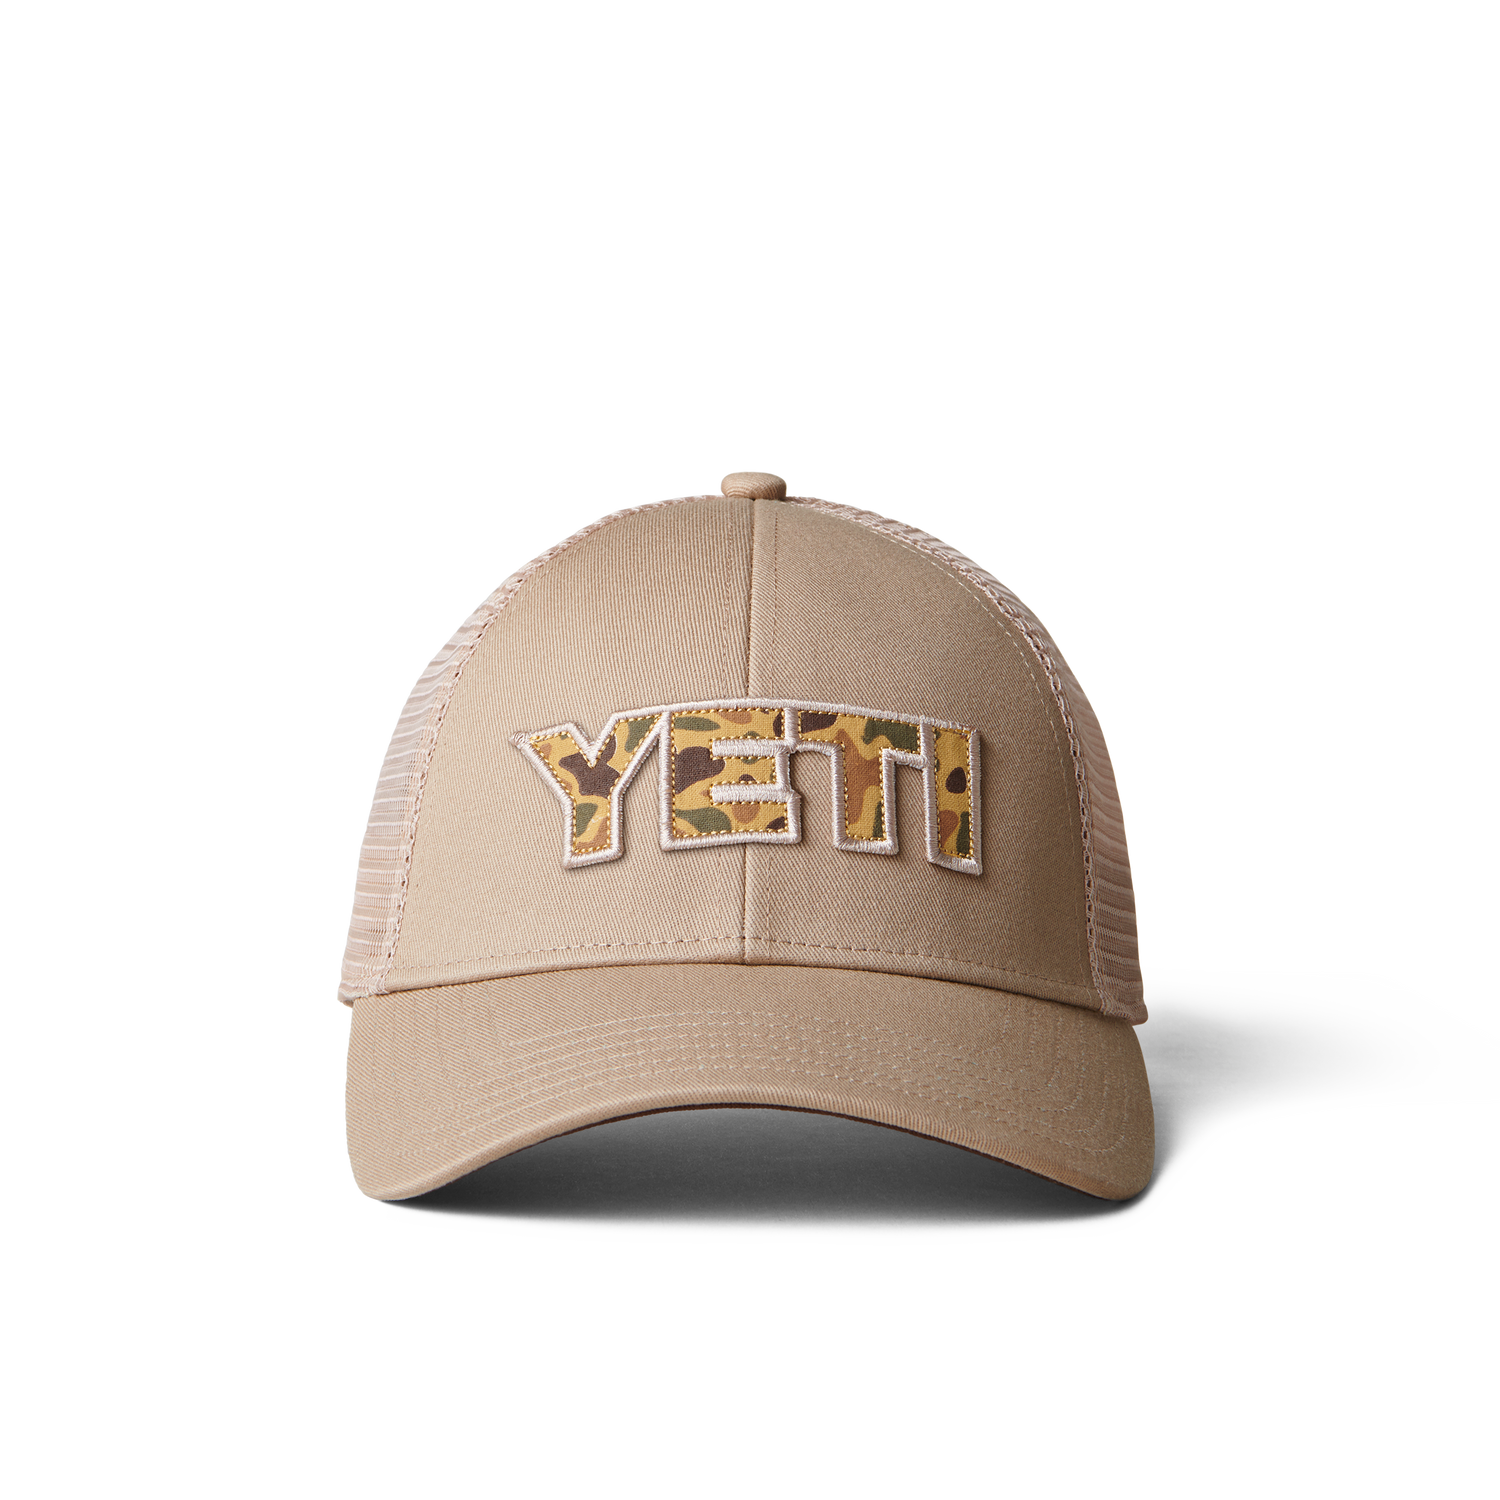 YETI Clothing: Hats, Shirts, Hoodies And More – YETI EUROPE